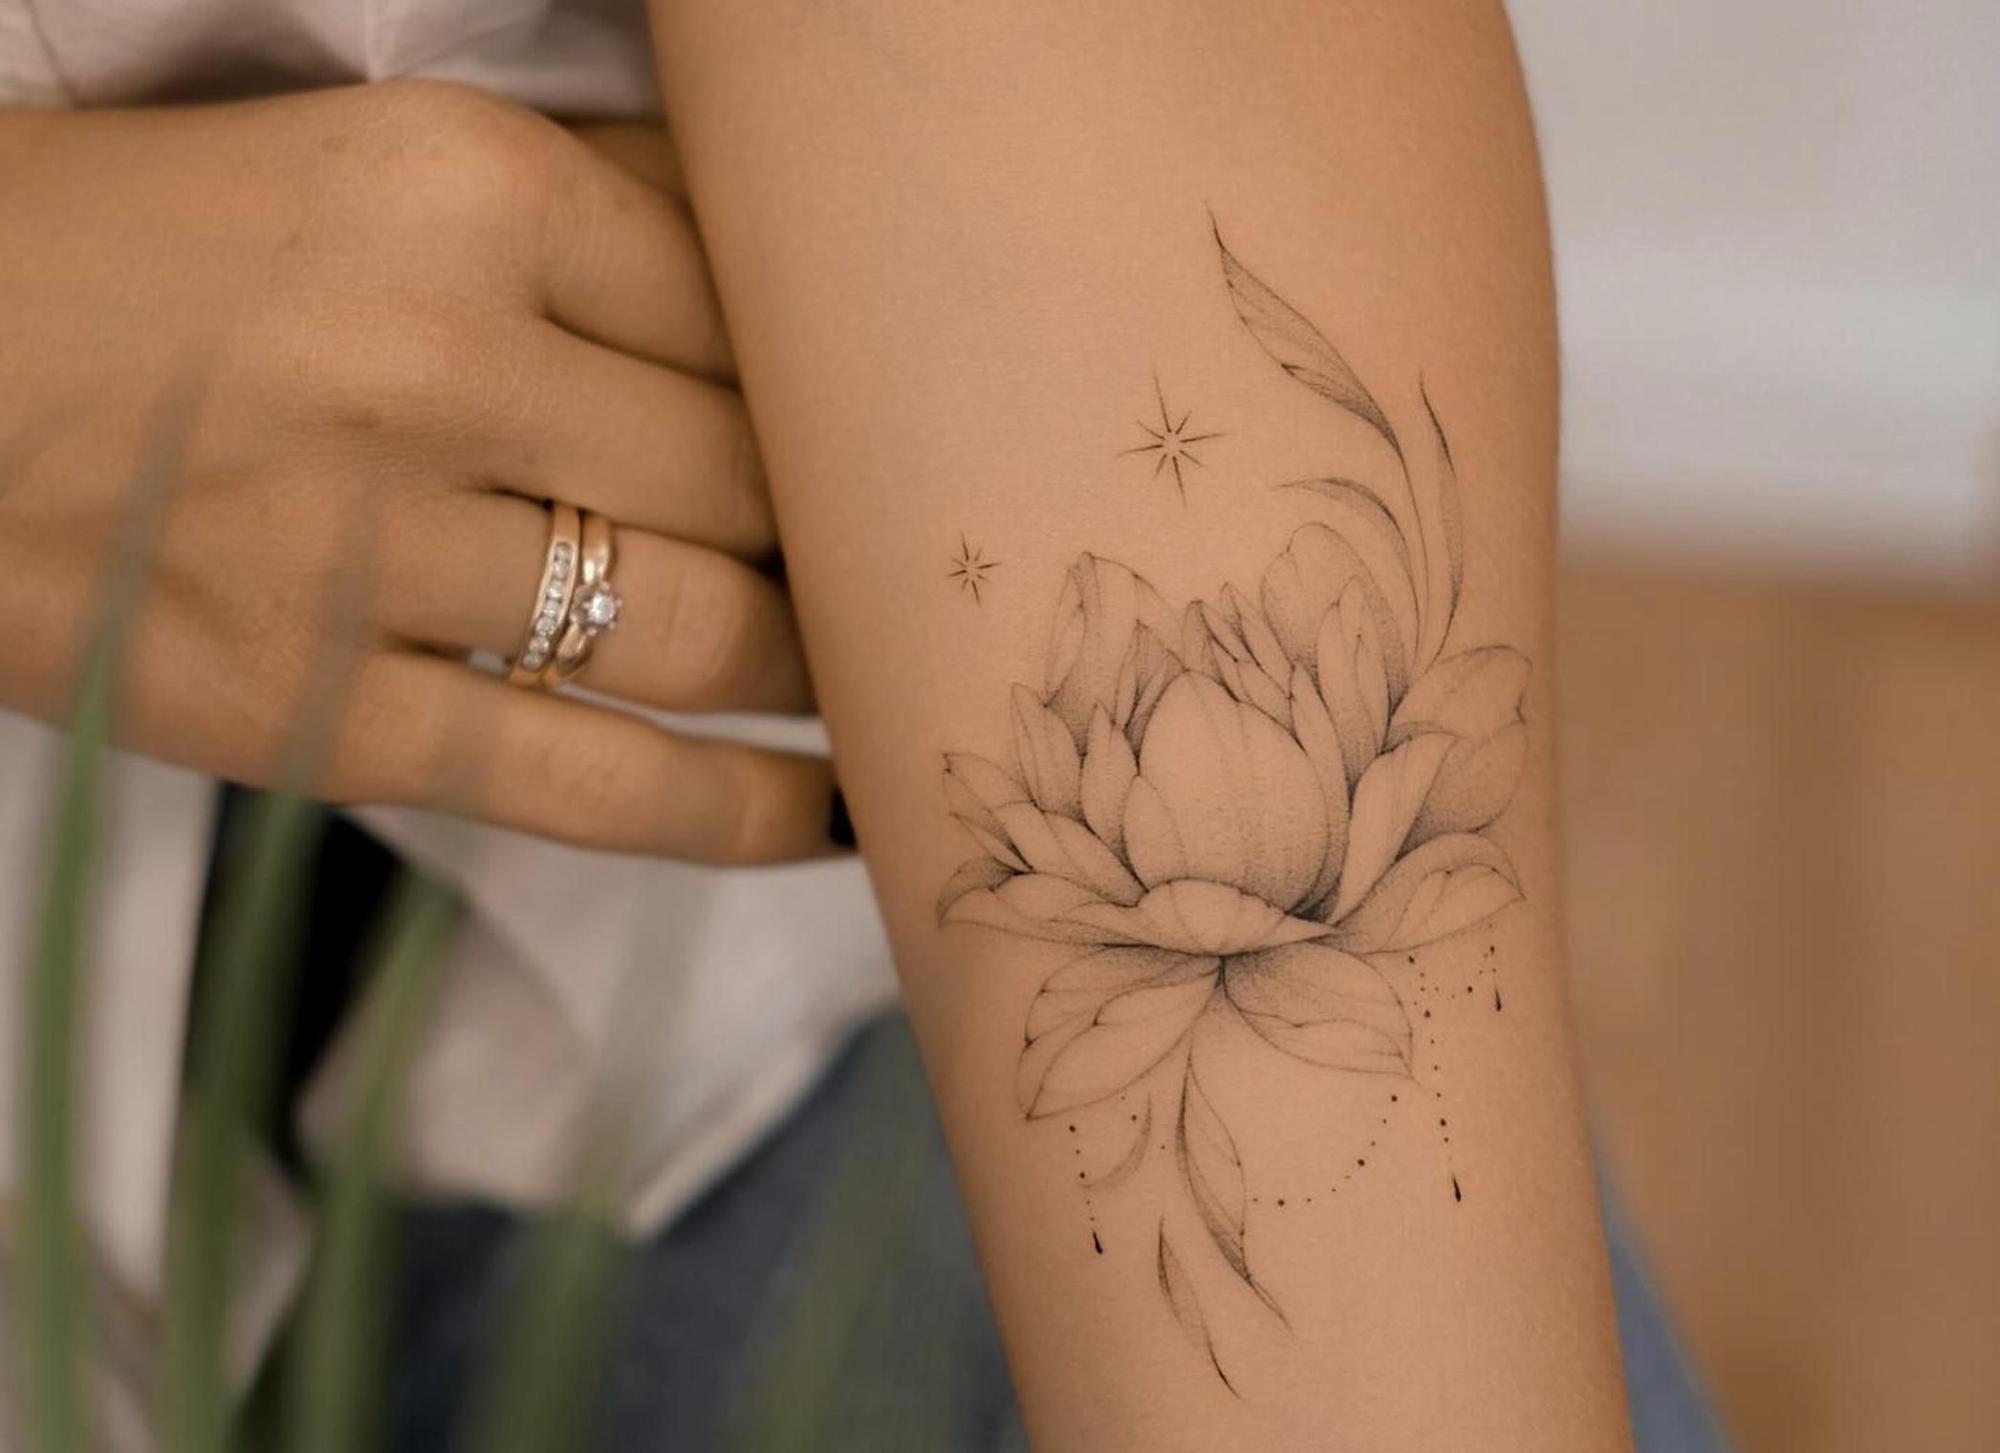 Tatuaje de flor de loto, uno de los más repetidos